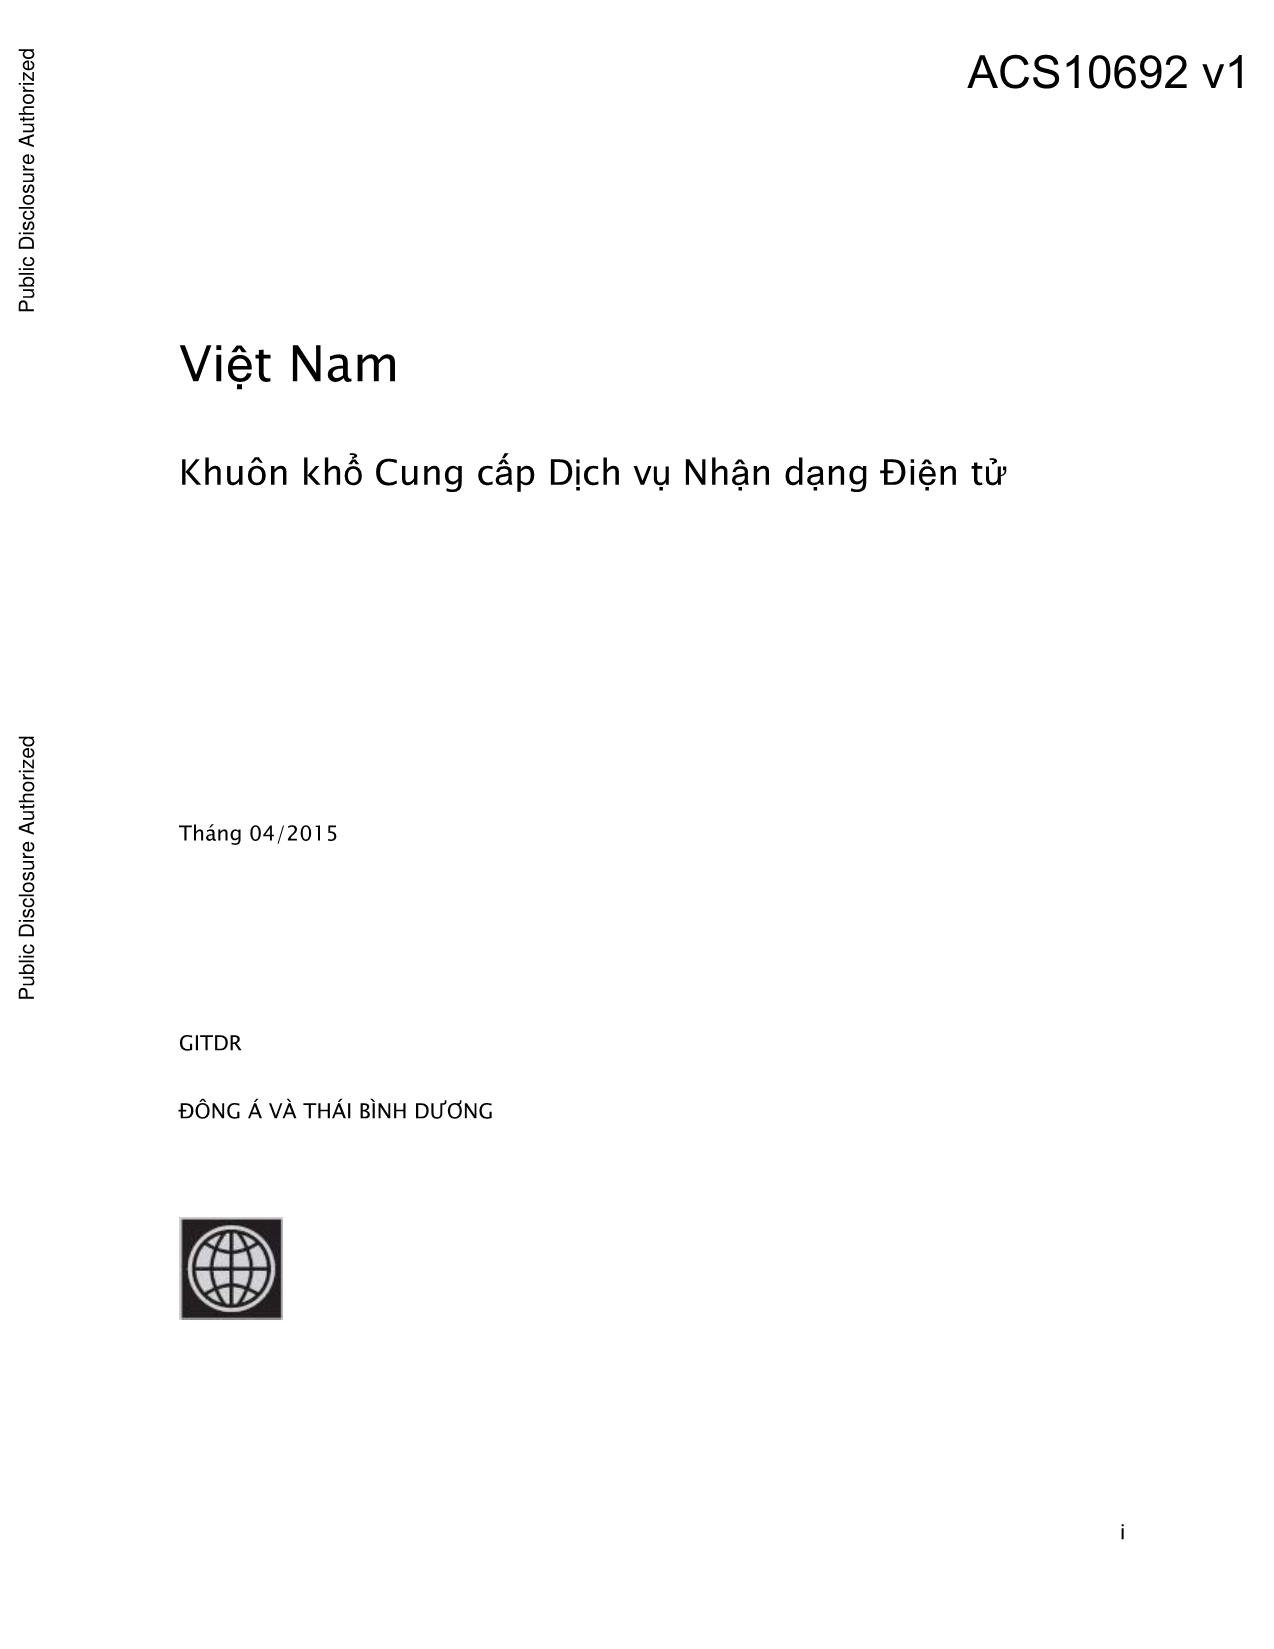 Báo cáo Việt Nam - Khuôn khổ cung cấp dịch vụ nhận dạng điện tử trang 1